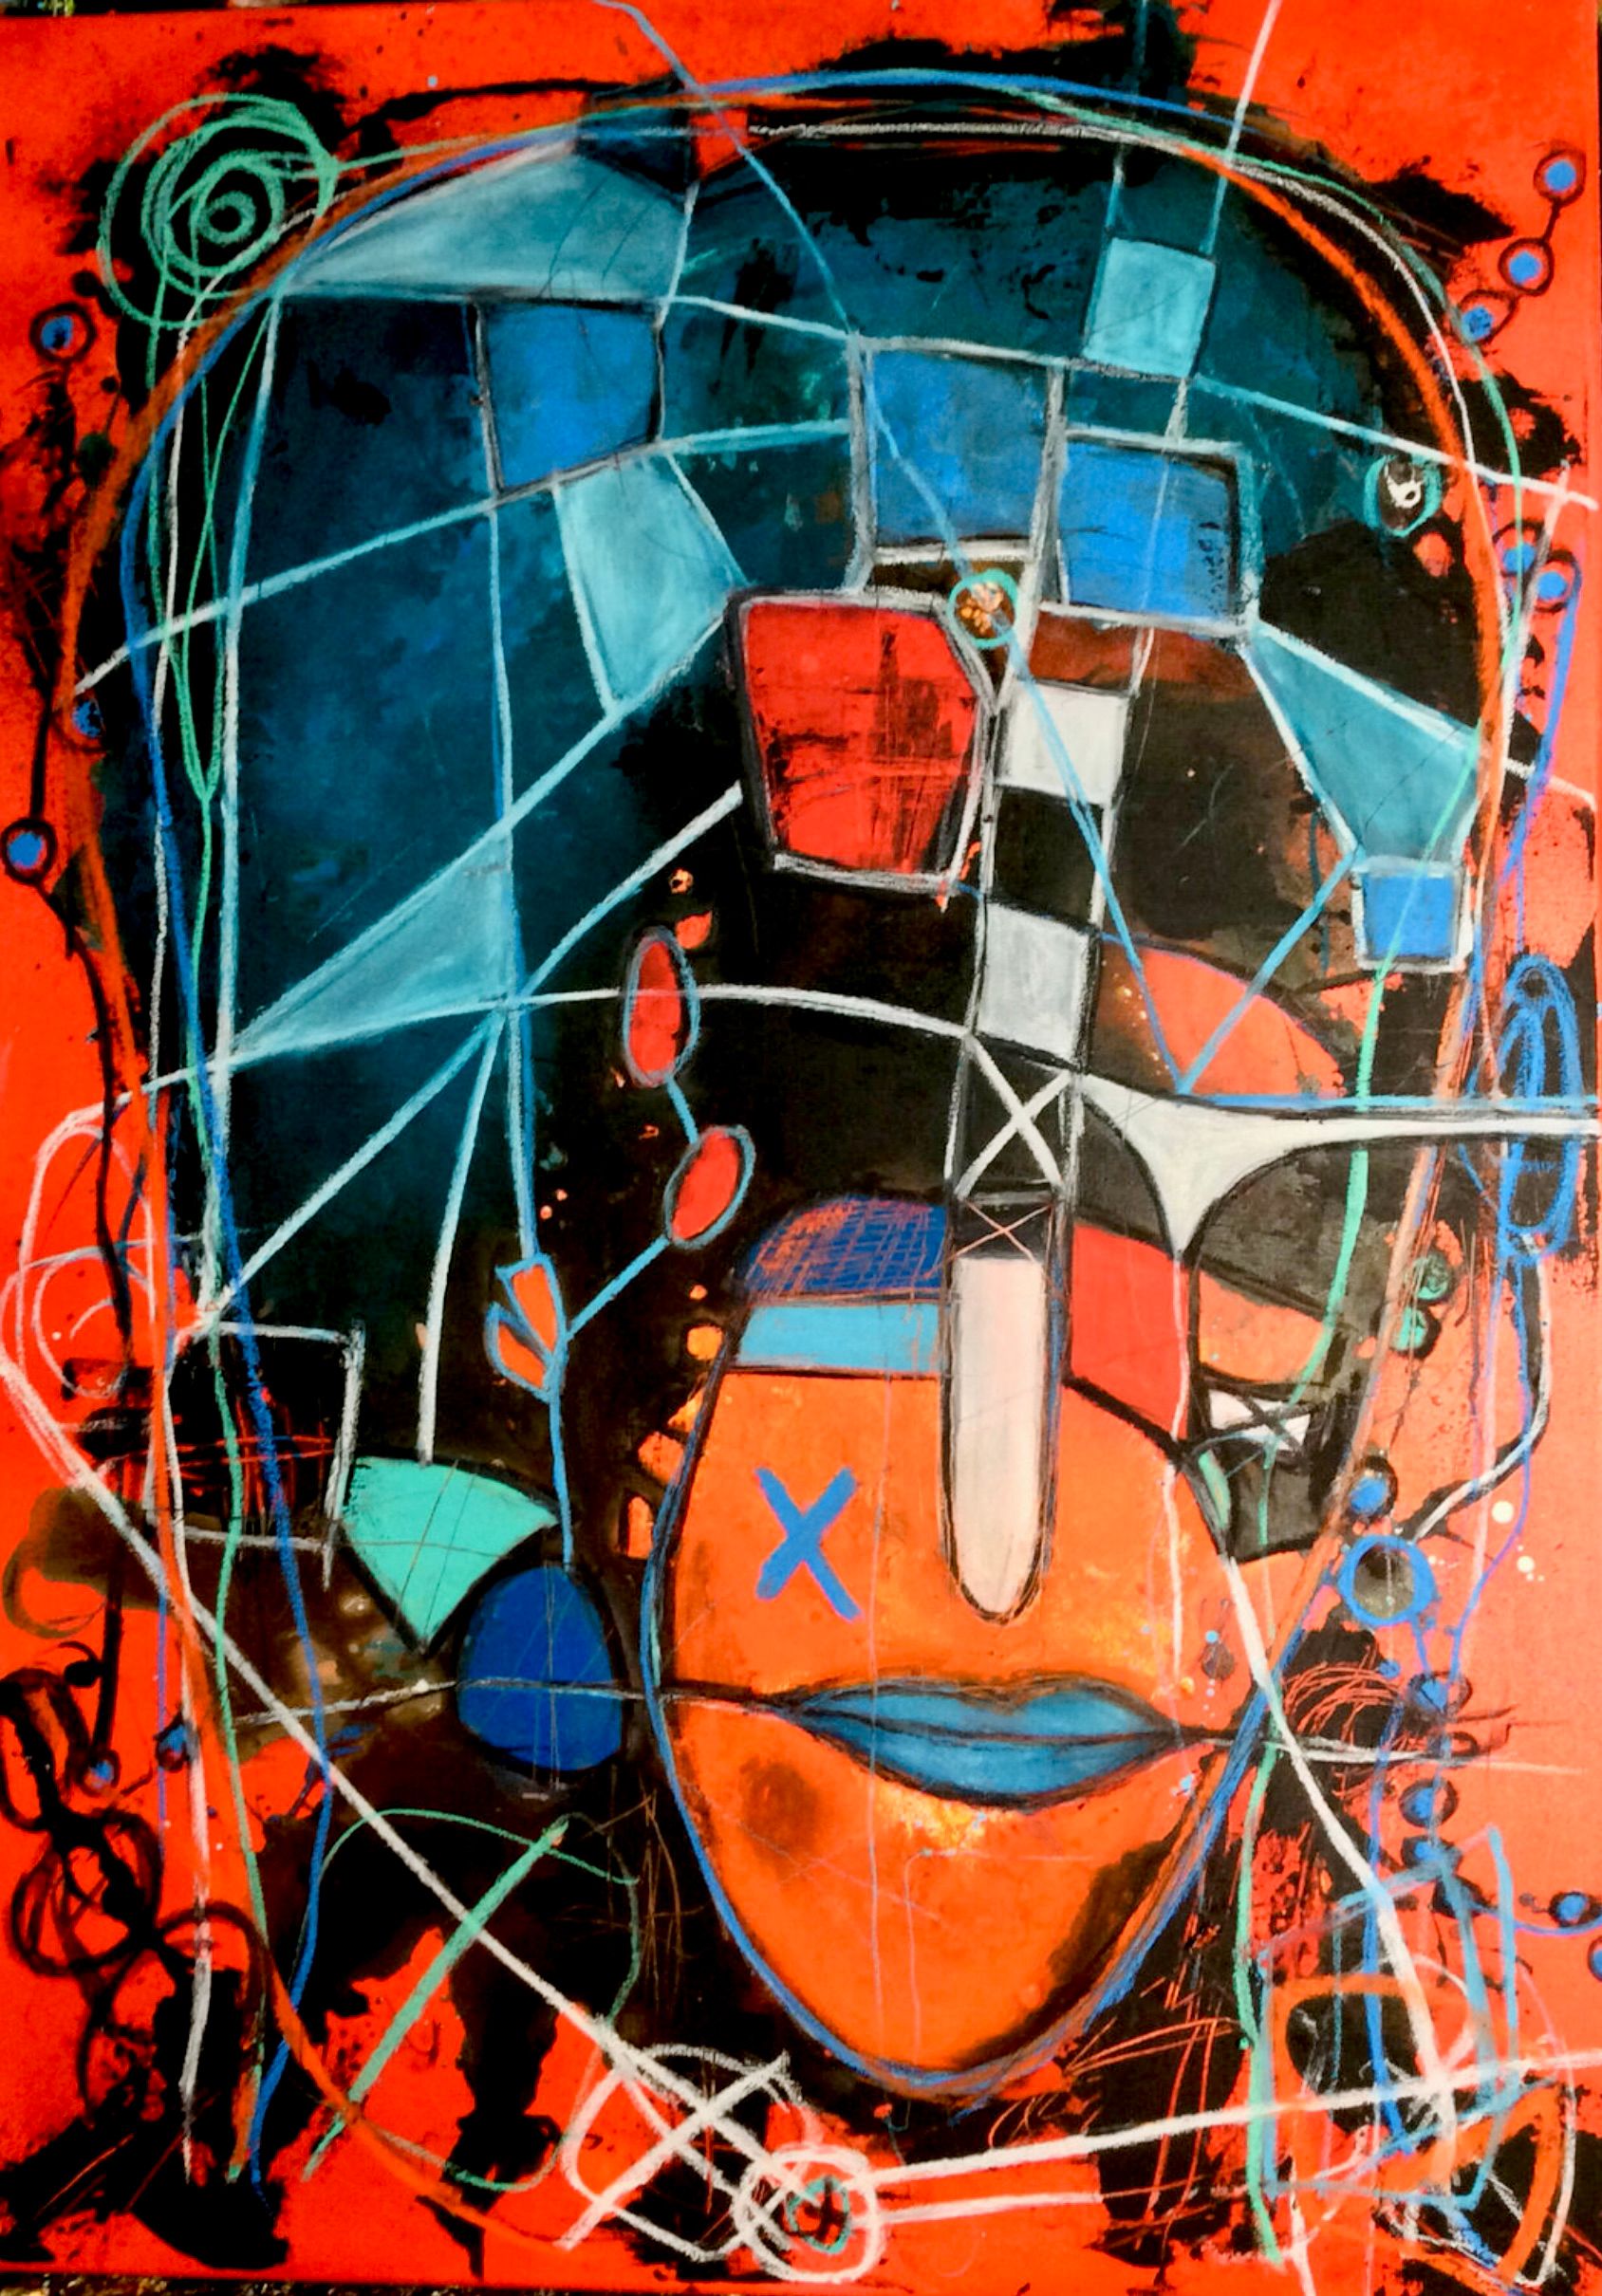 El retrato semi-abstracto "sin título" de Ilona Schmidt muestra a una persona/rostro. La paleta de colores del cuadro se compone de varios tonos de rojo, naranja y azul, turquesa.